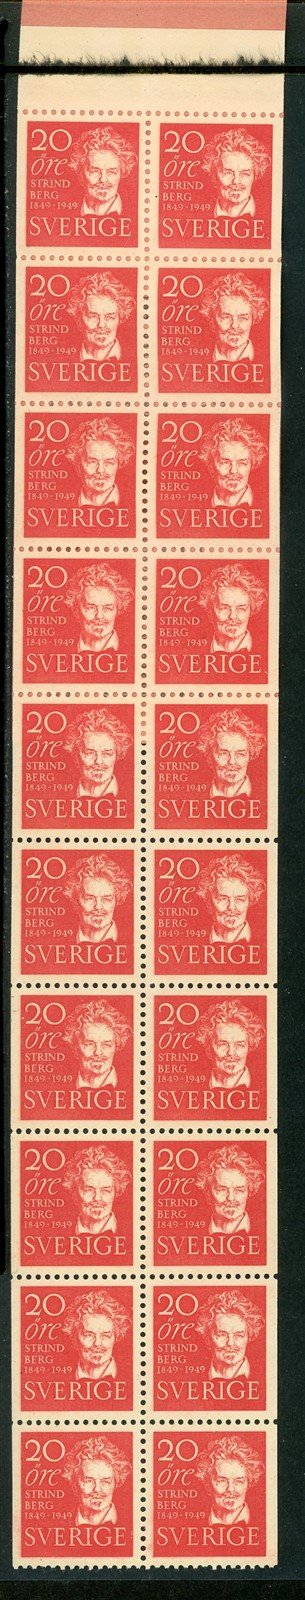 Sweden Scott #407a MNH BOOKLET of 20 August Strindberg CV$16+ 430334